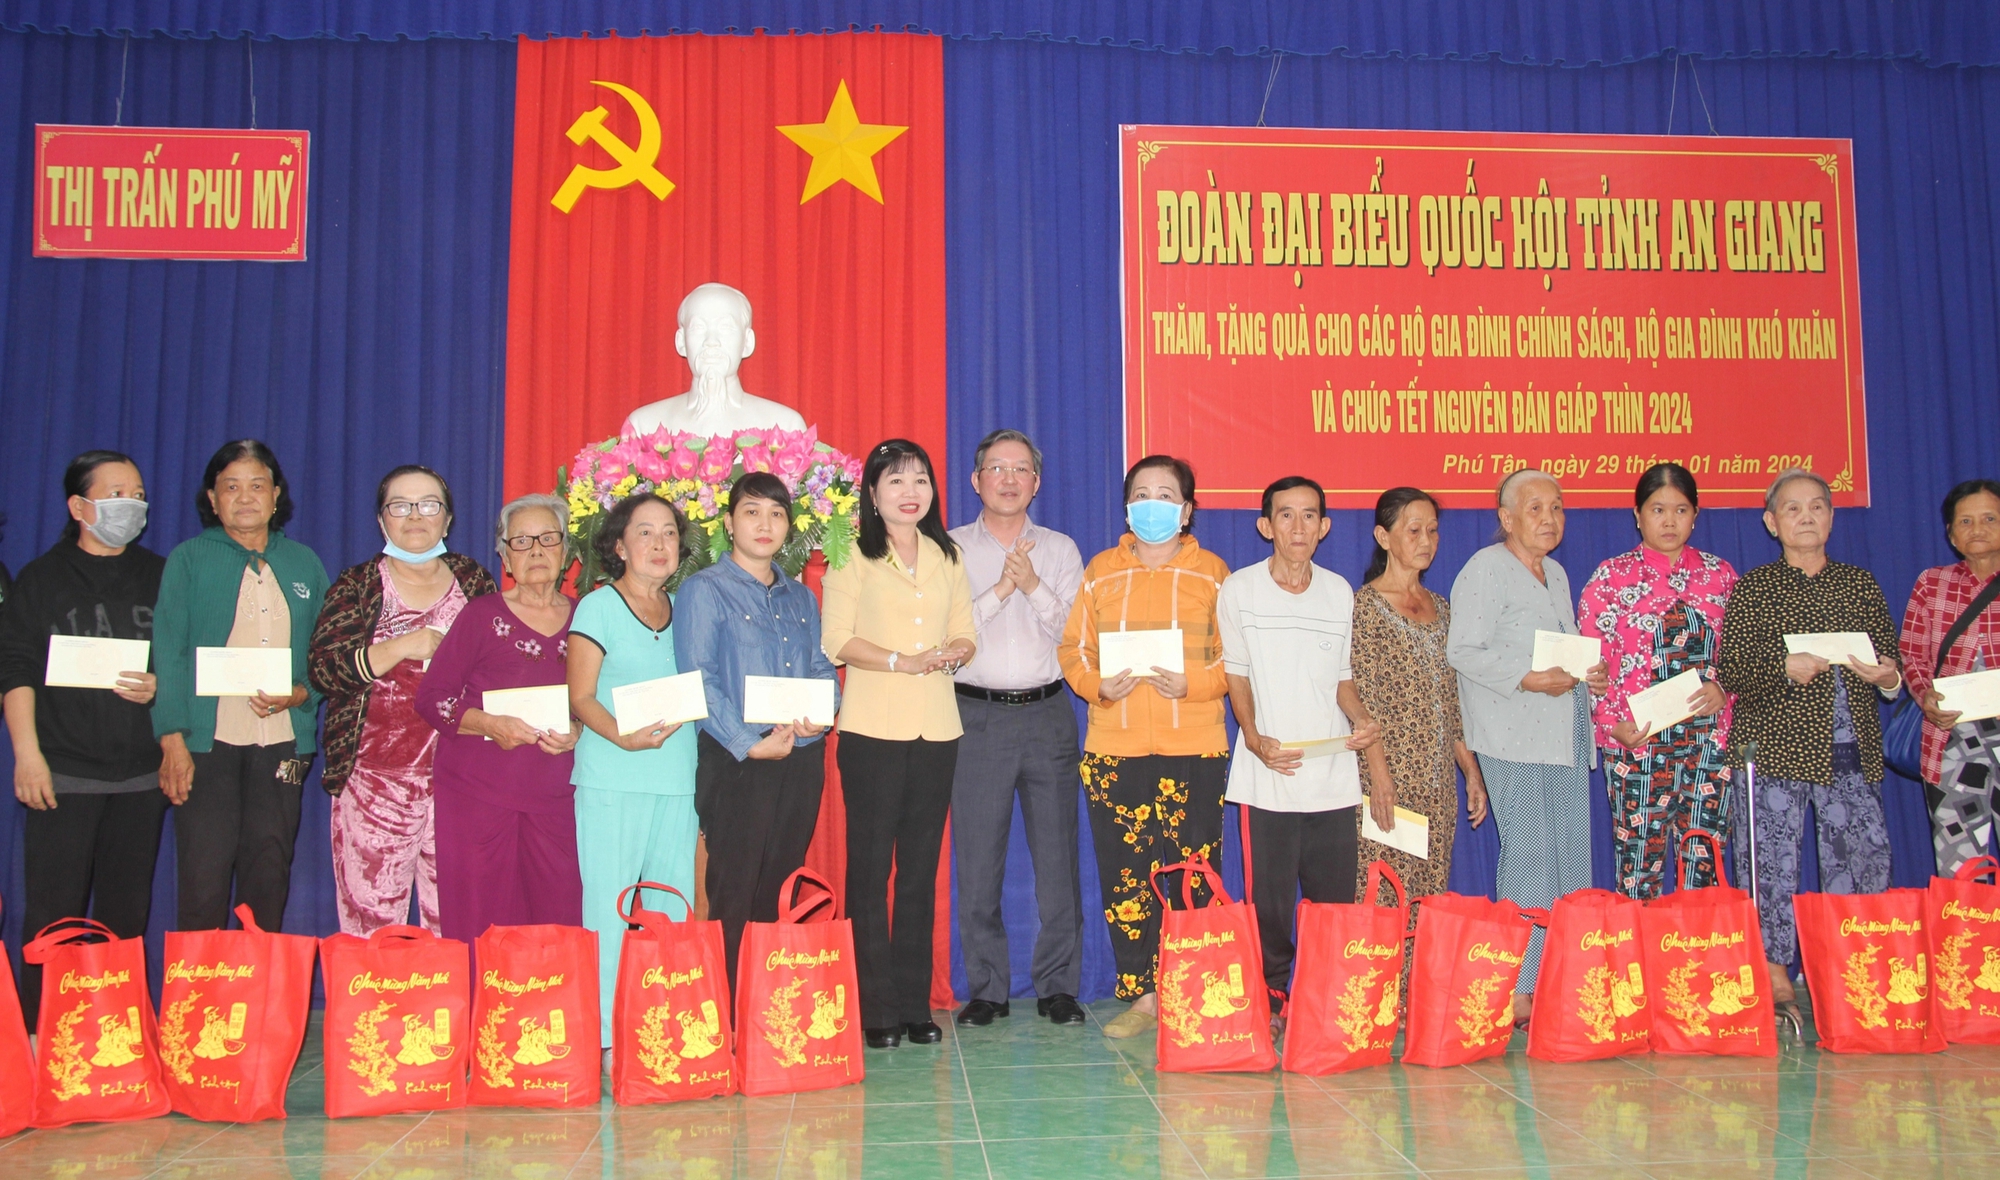 Chủ tịch Hội NDVN Lương Quốc Đoàn trao quà Tết cho gia đình chính sách, hộ hoàn cảnh khó khăn ở An Giang- Ảnh 3.